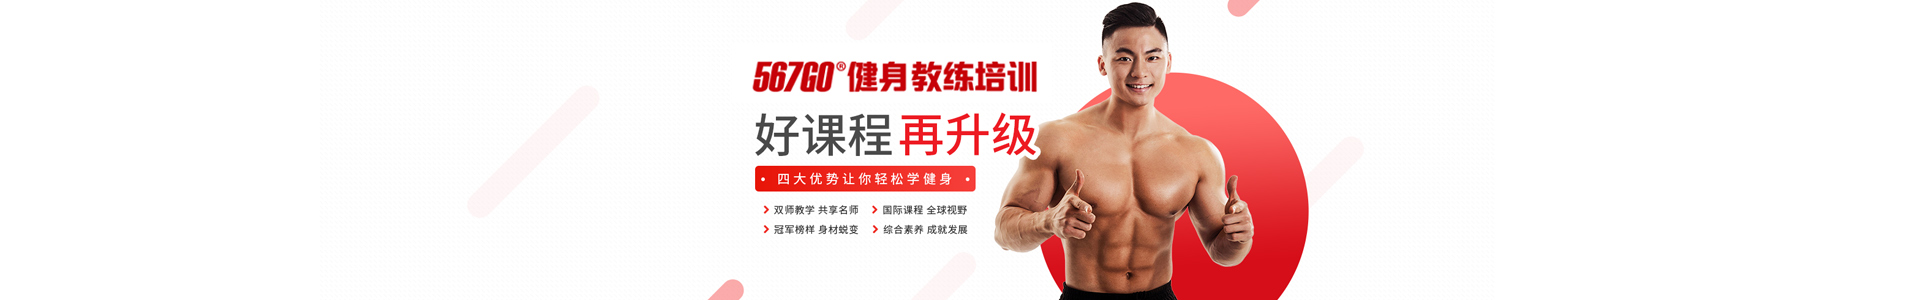 南京567GO国际健身学院